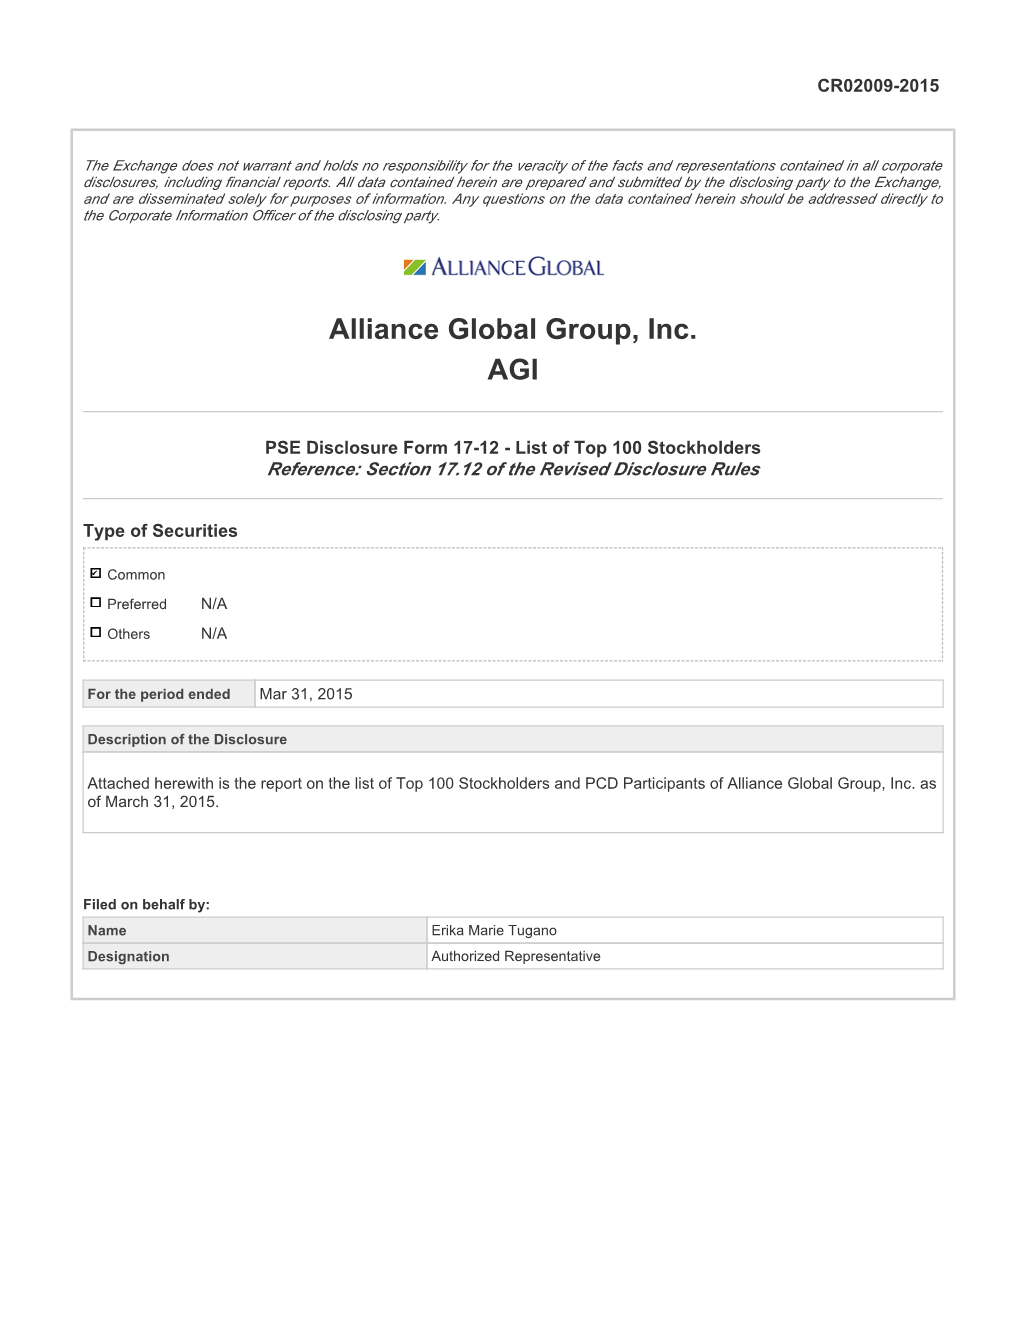 Alliance Global Group, Inc. AGI